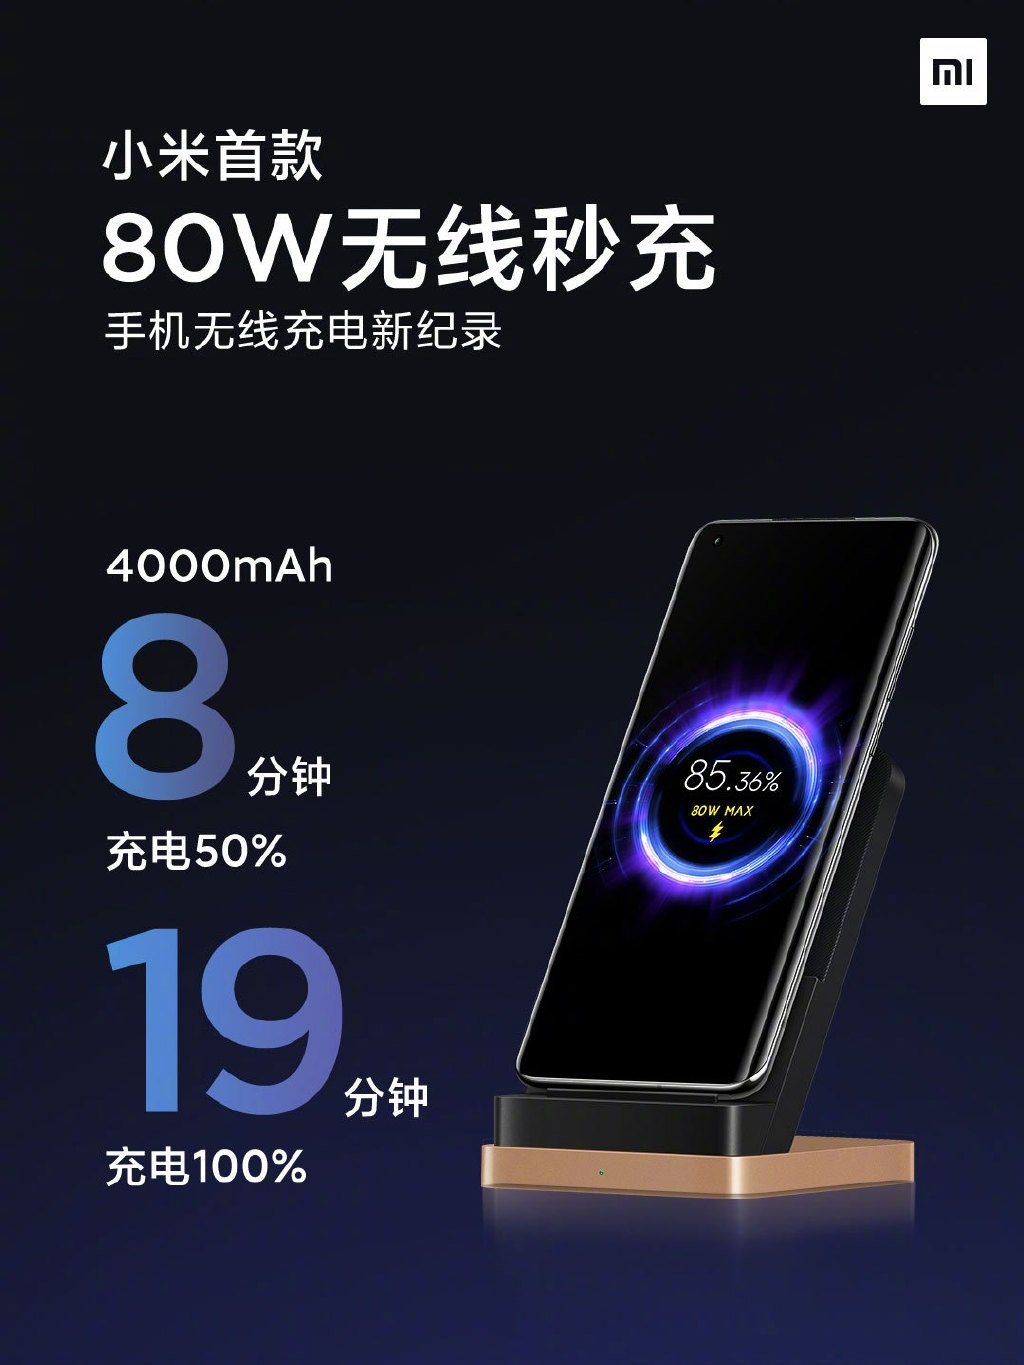 A Xiaomi anuncia a tecnologia de carregamento sem fio de 80 W que carrega totalmente a bateria de 4000 mAh em 19 minutos